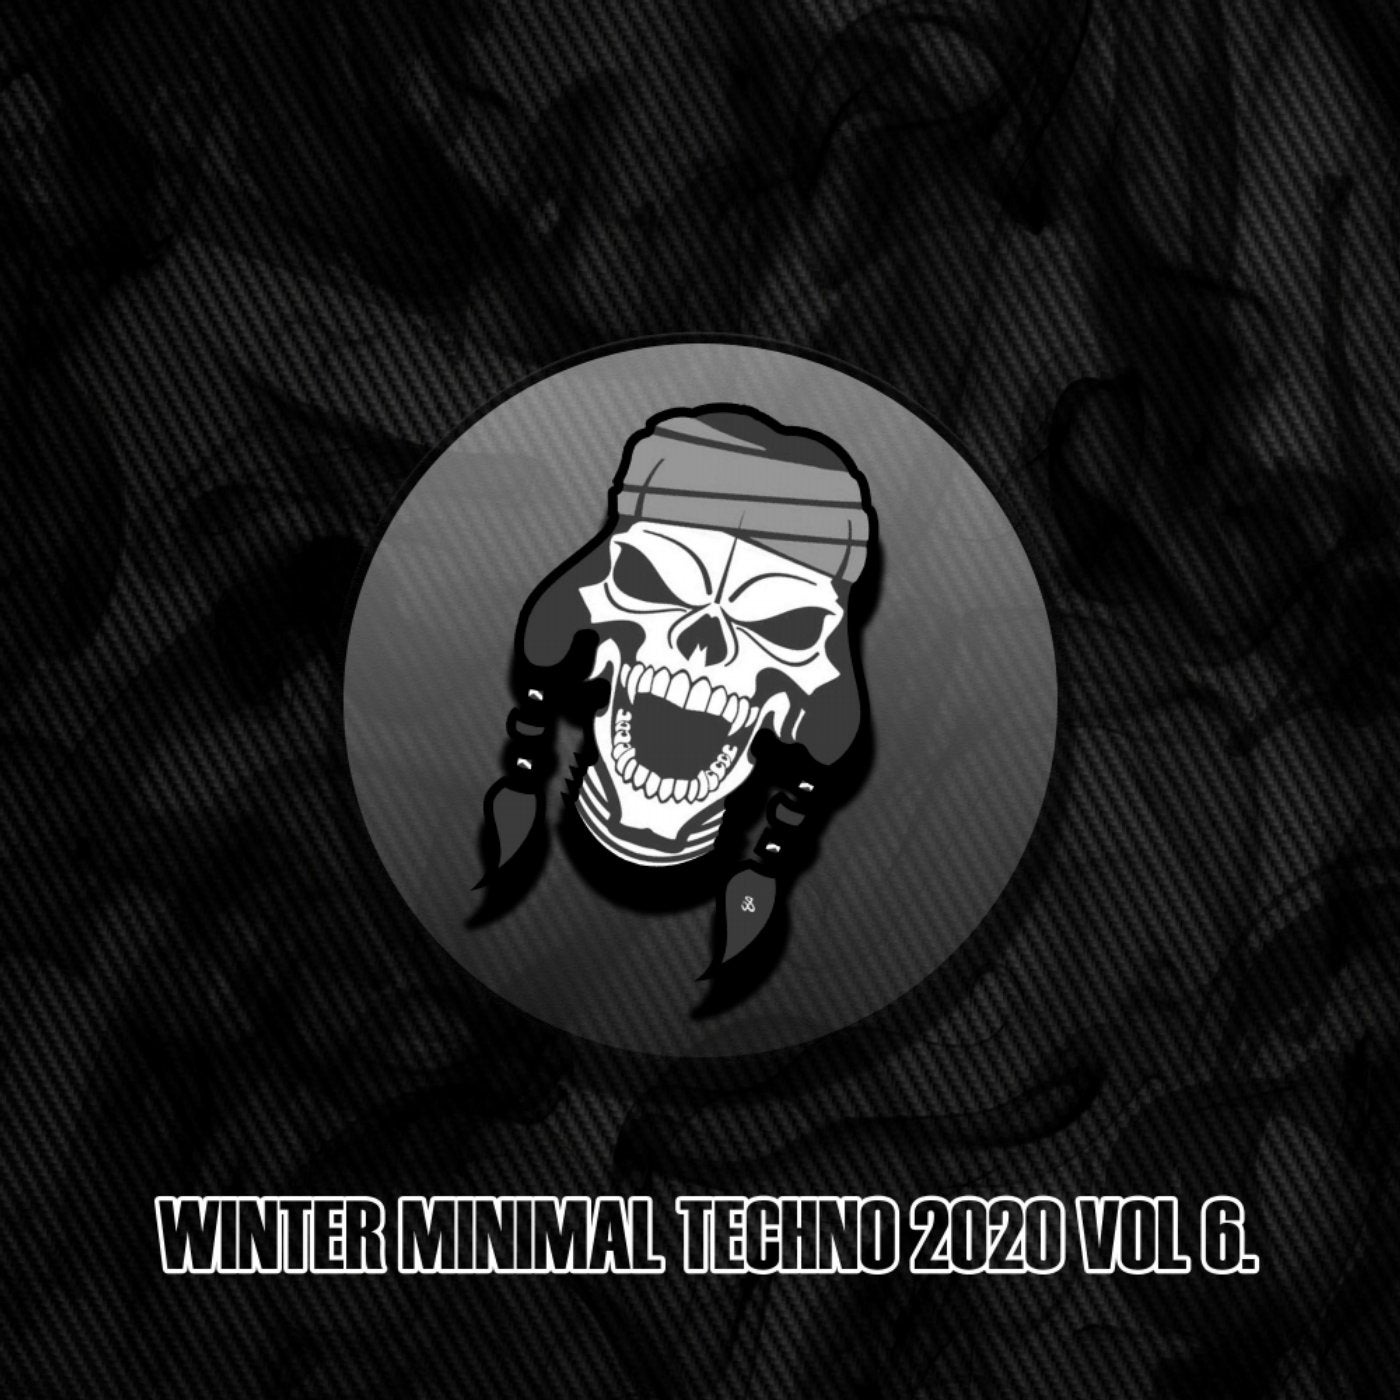 Winter Minimal Techno 2020, Vol. 6